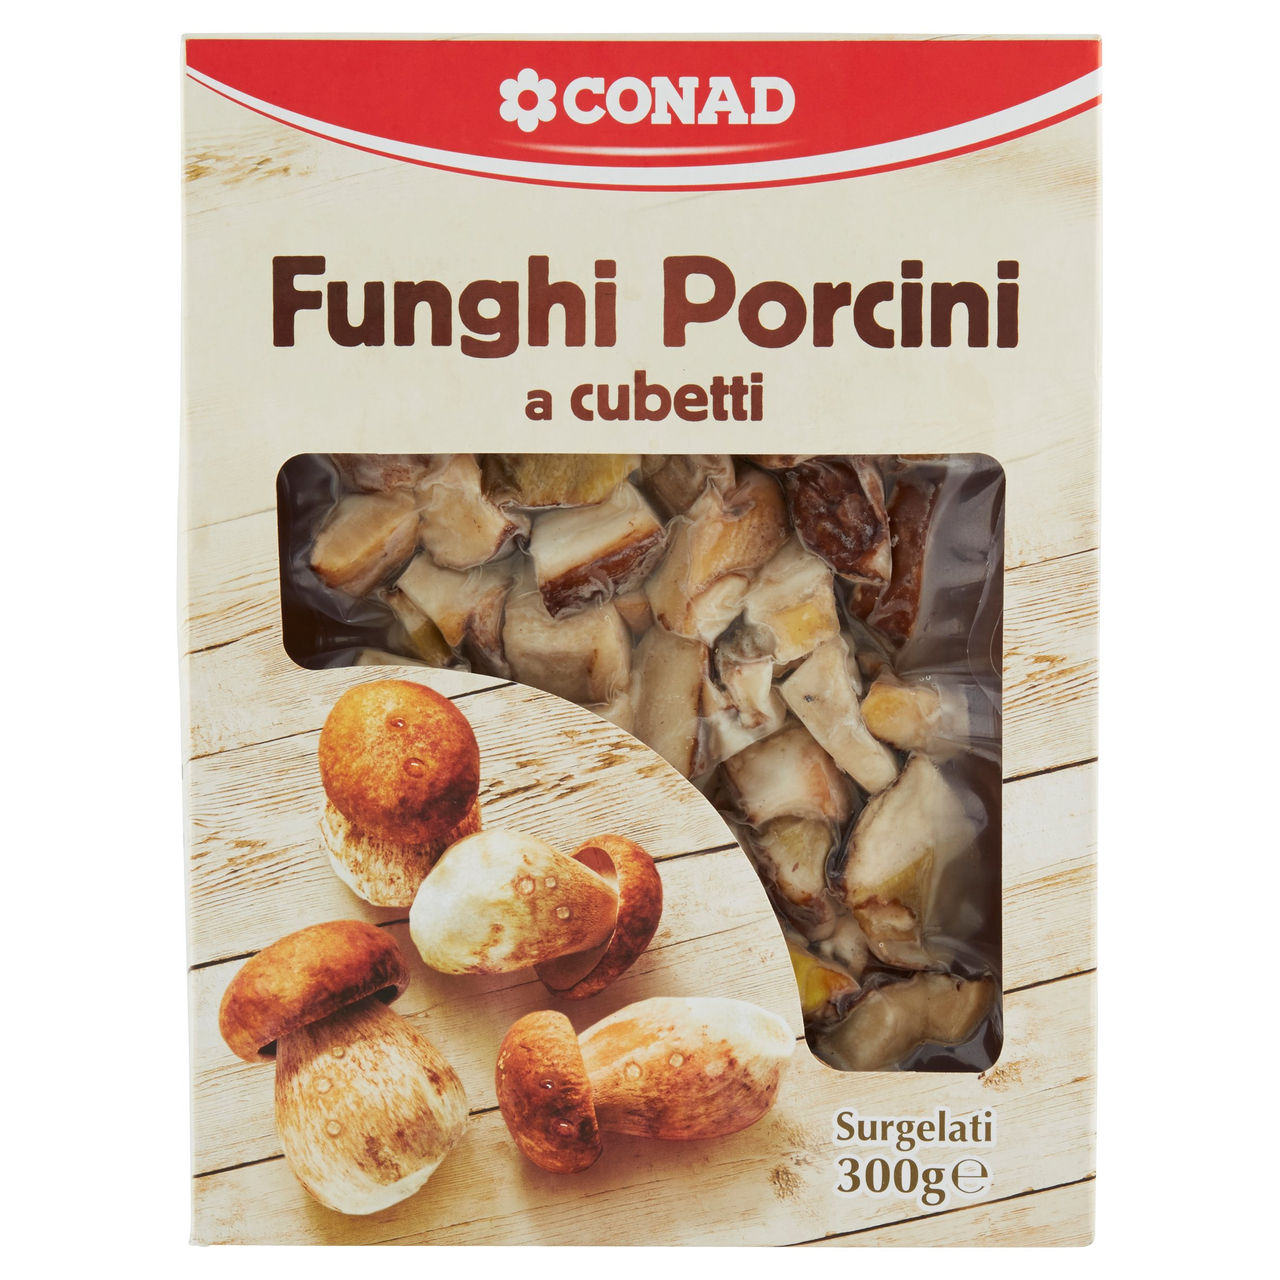 CONAD Funghi Porcini a cubetti Surgelati 300 g